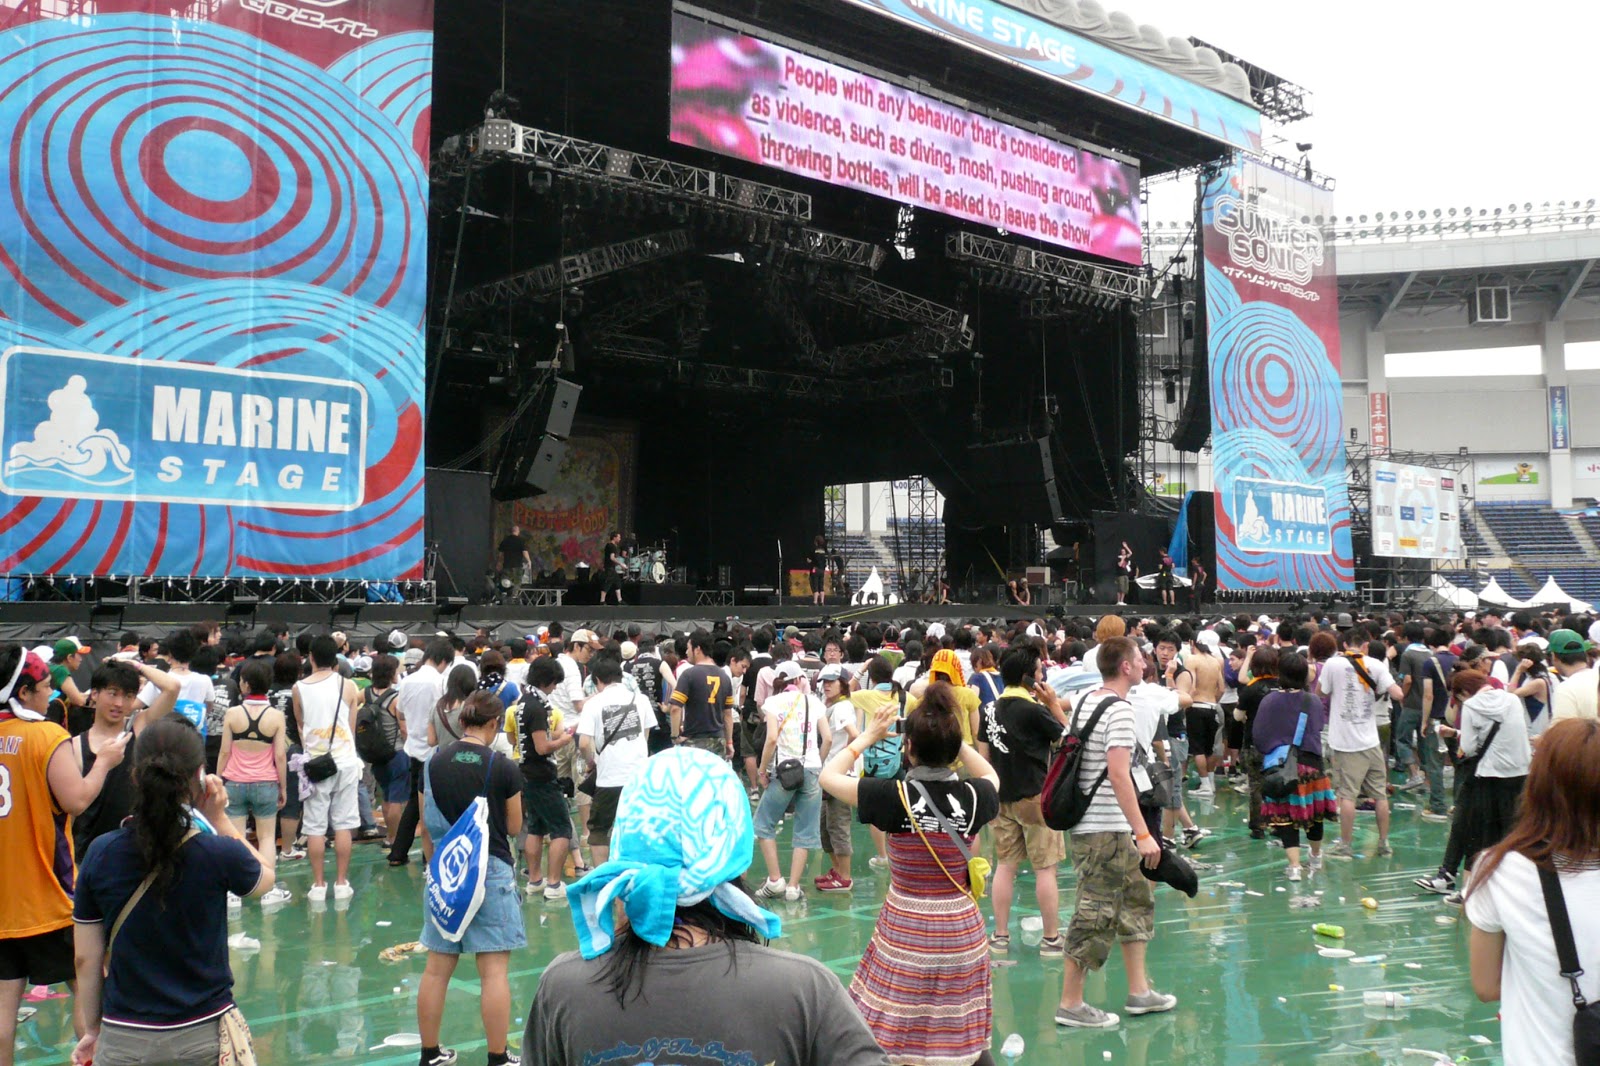 Marina Stage @ Chiba Marine Stadium